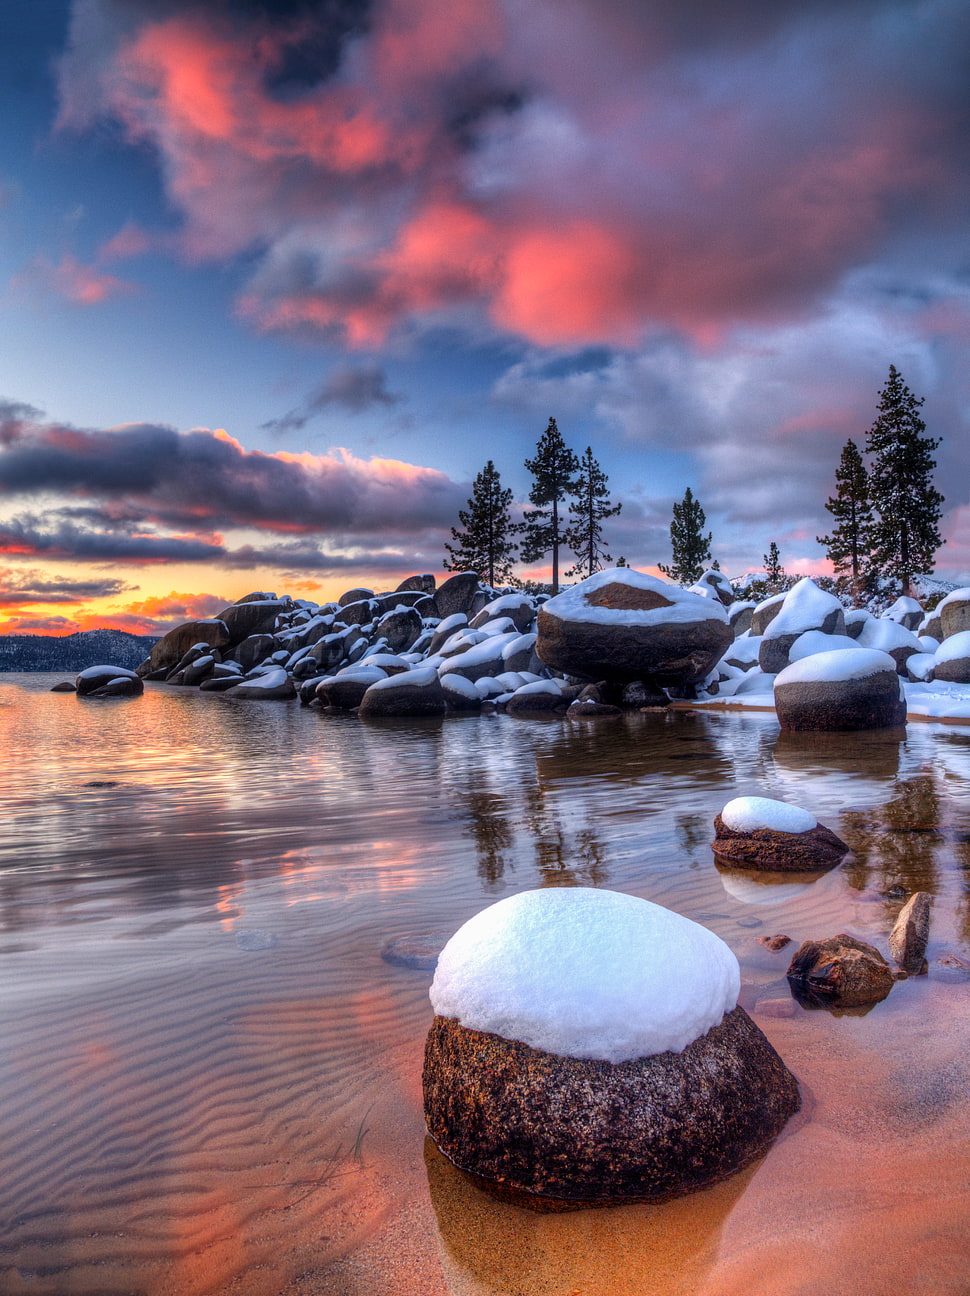 Những cánh tuyết trắng muốt phủ lên những mảnh đá sắc nét tạo thành khung cảnh hoang sơ đầy mê hoặc. Hãy đến và ngắm nhìn bức ảnh chụp tuyết trên đá tại hồ Tahoe trên Wallpaper Flare. Bạn sẽ cảm nhận được sự tĩnh lặng, tinh khiết và yên bình đến khó tả.